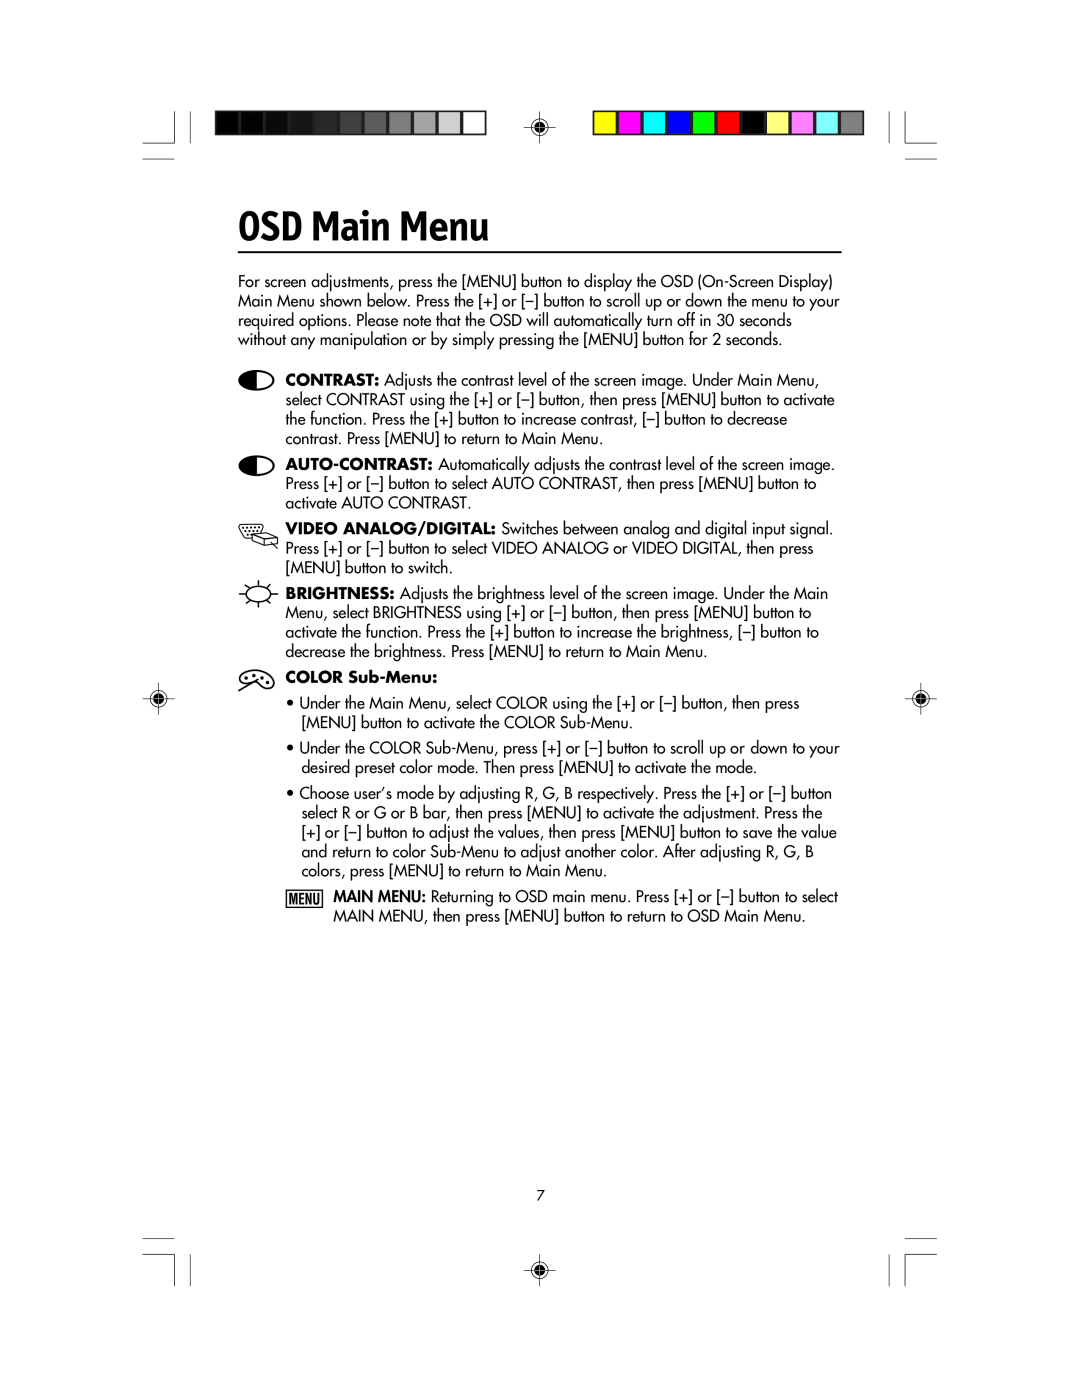 NEC LCD1920NX manual OSD Main Menu, COLOR Sub-Menu 